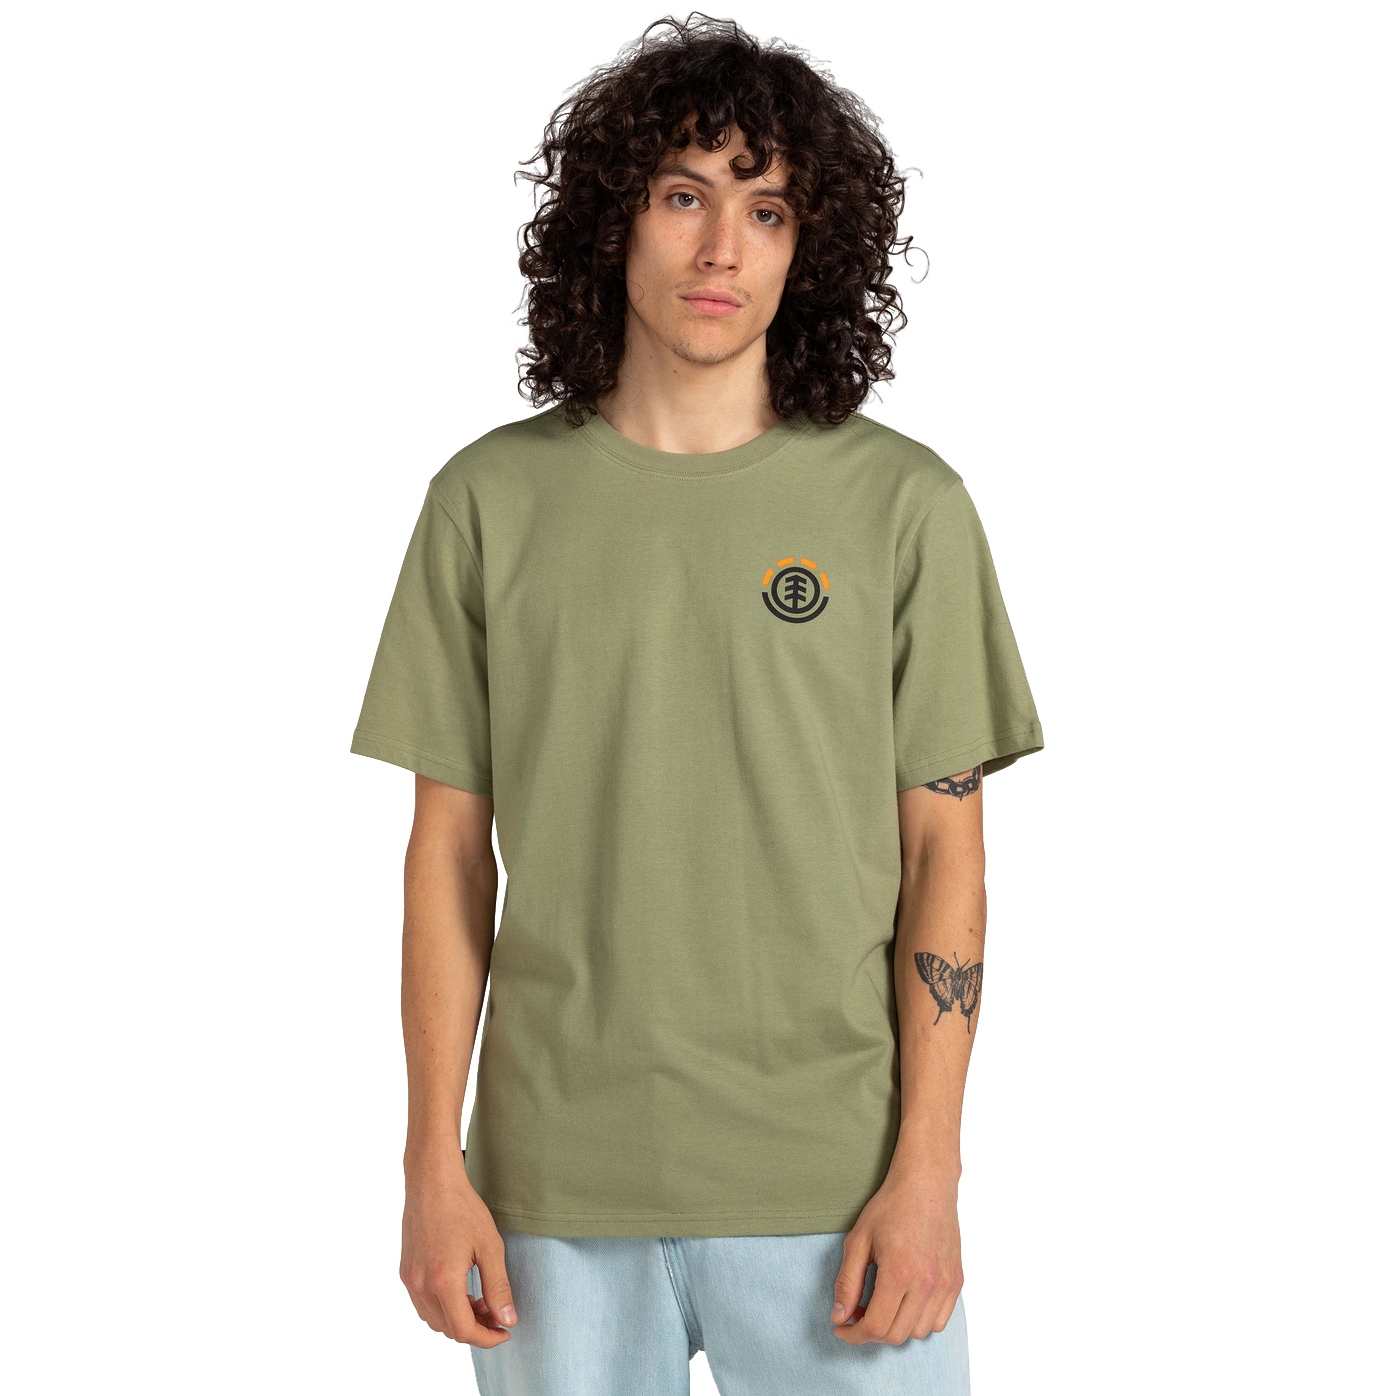 Productfoto van Element Hills T-Shirt - oil green